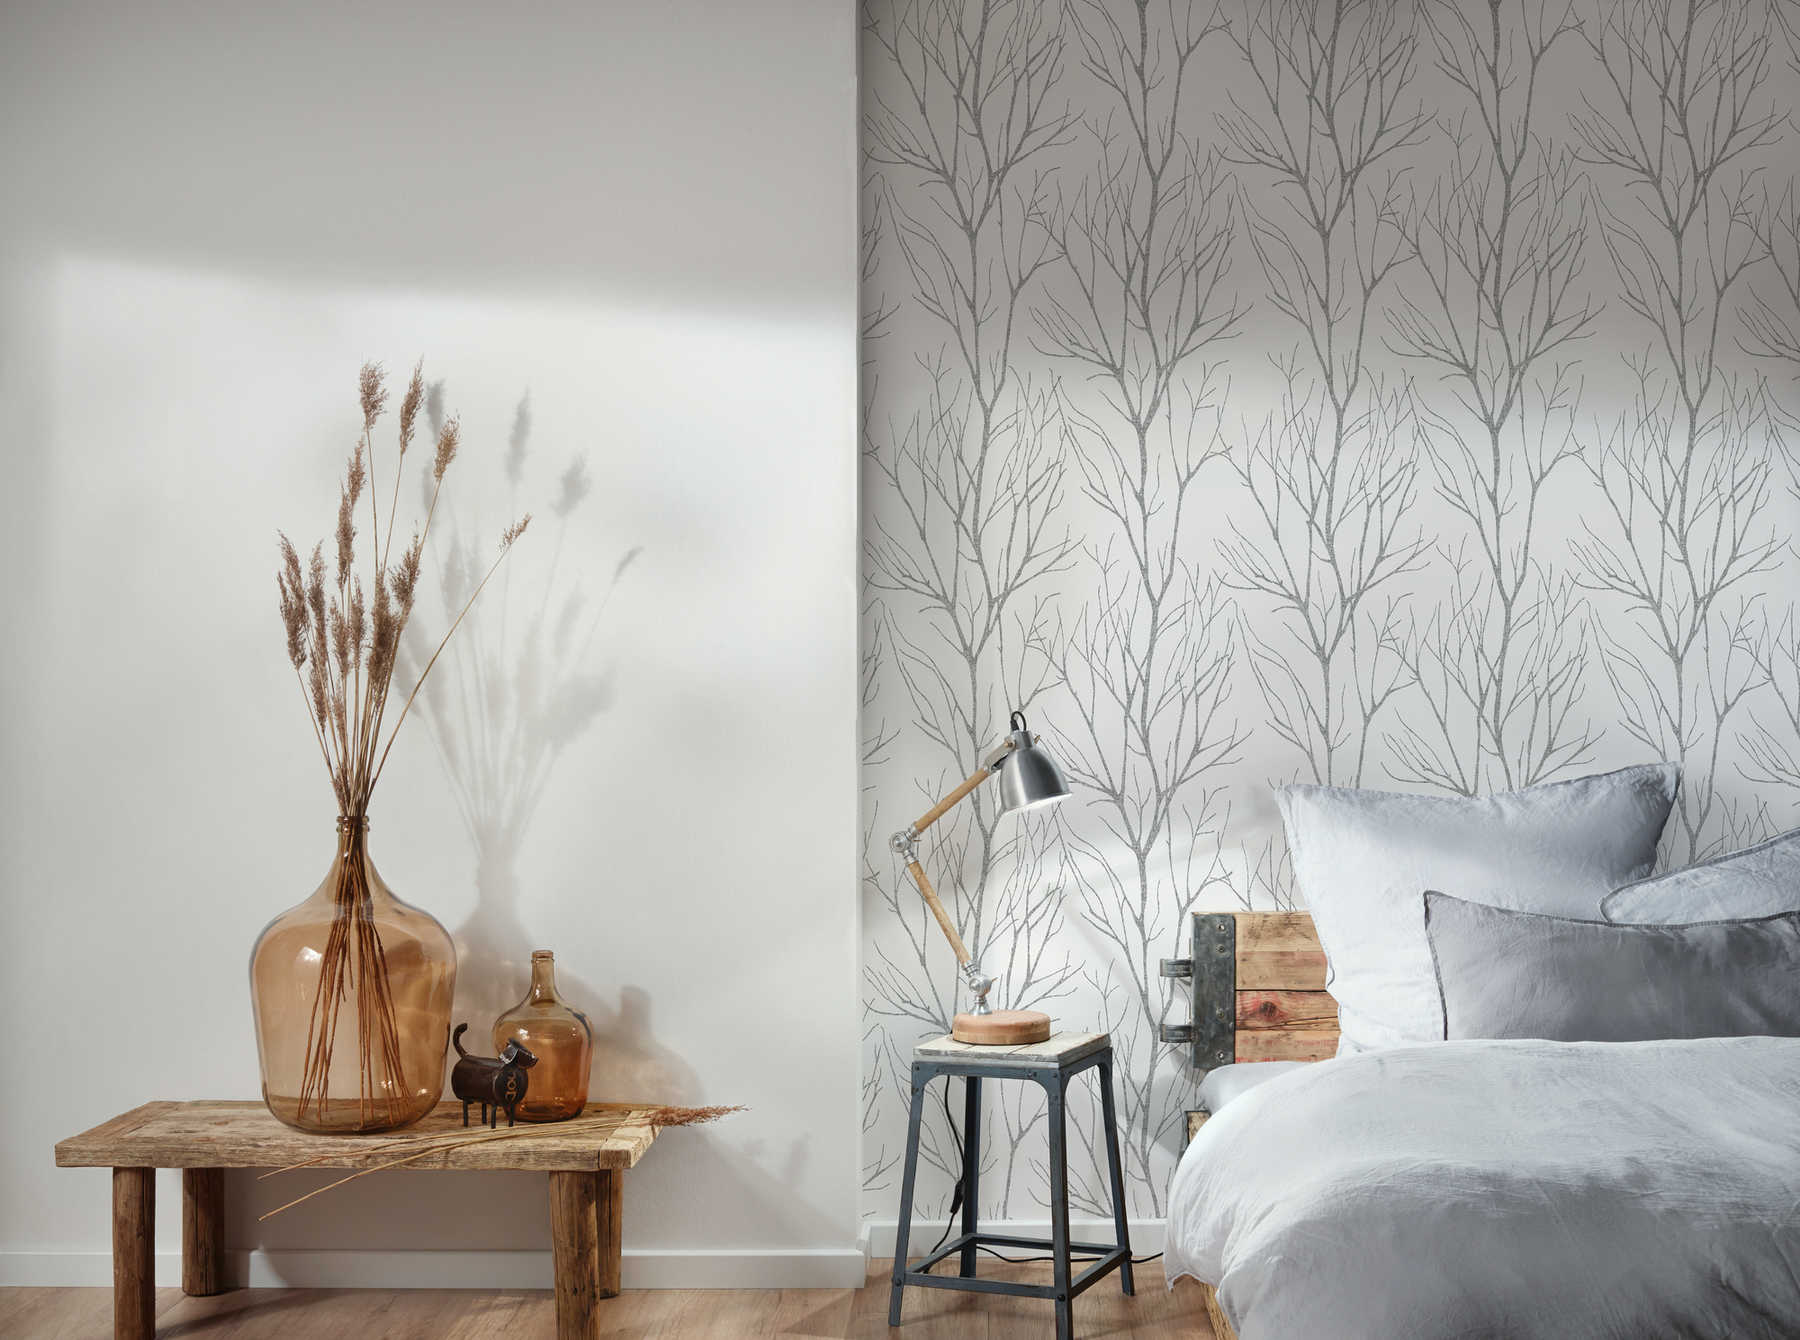             Non-woven wallpaper tree motif & metallic effect - grey, black, white
        